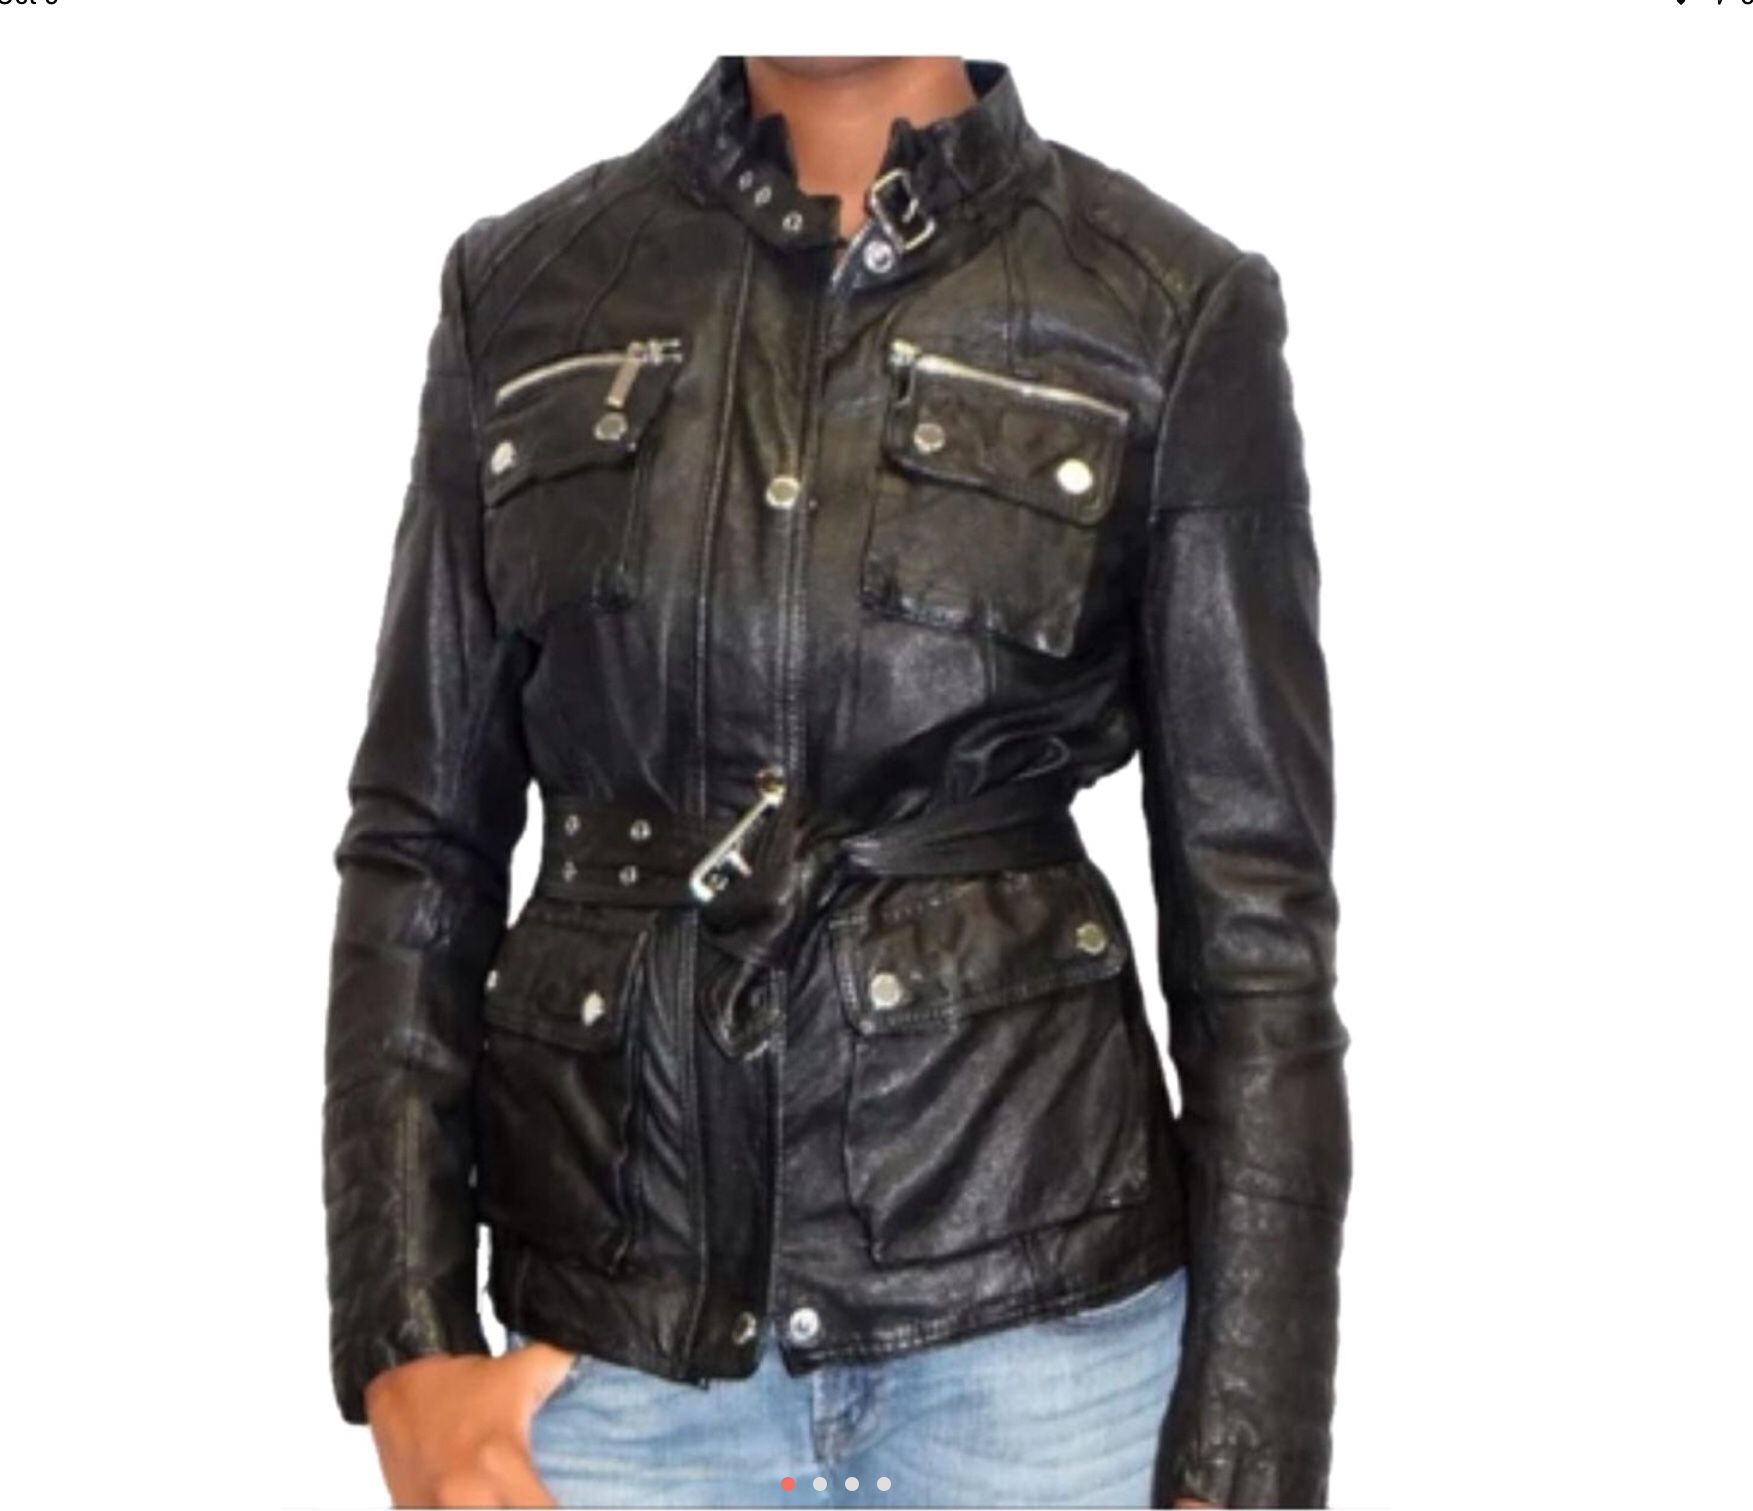 Michael Kors leather jacket sz 4